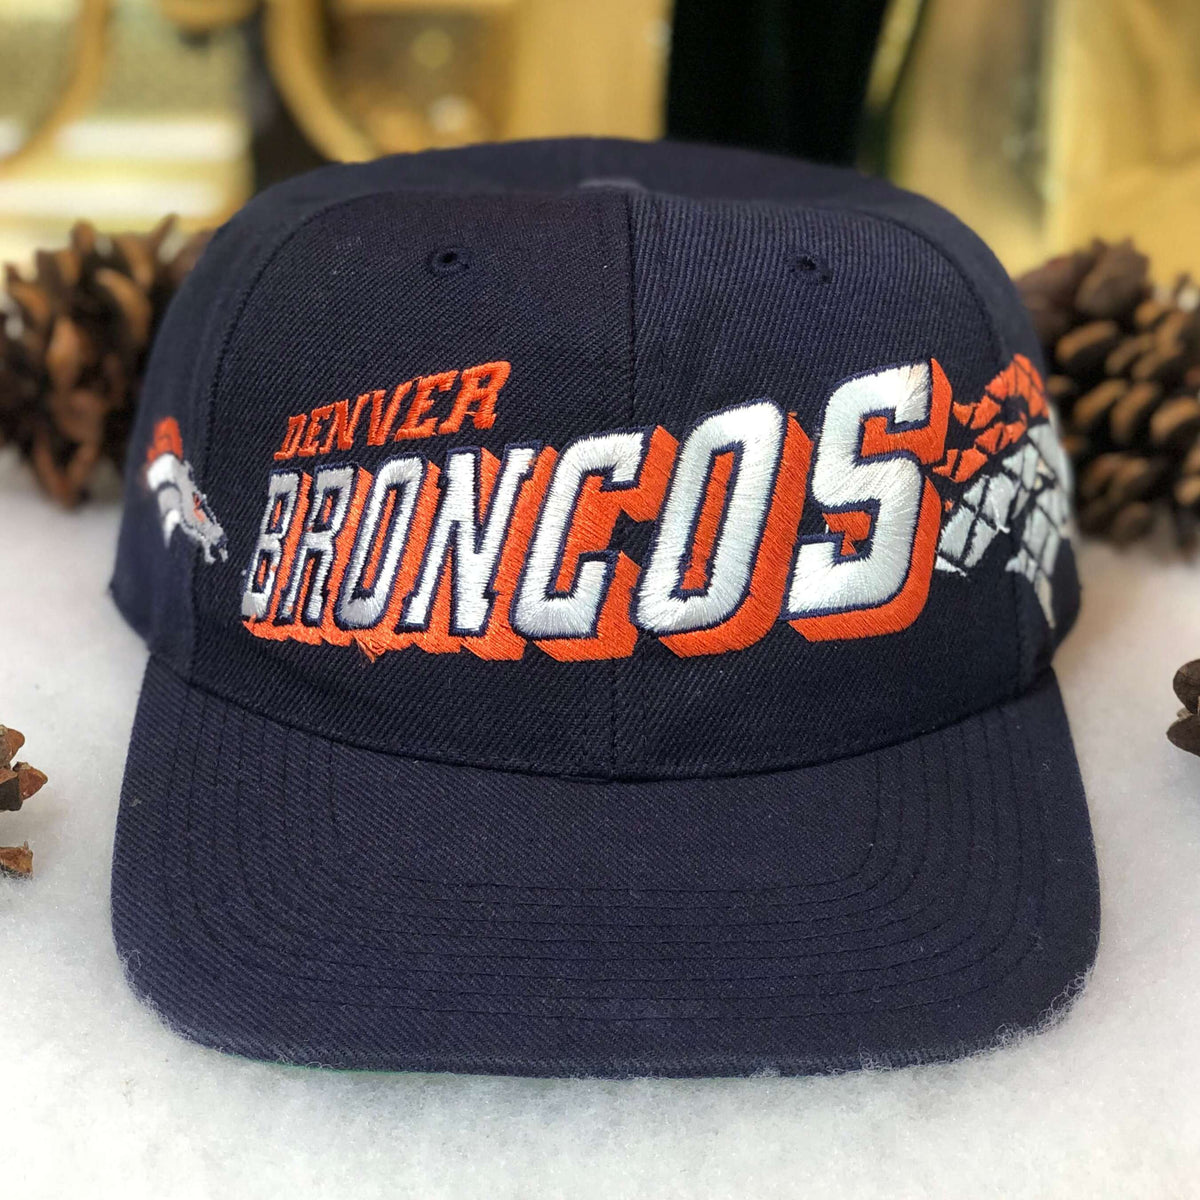 broncos hat vintage